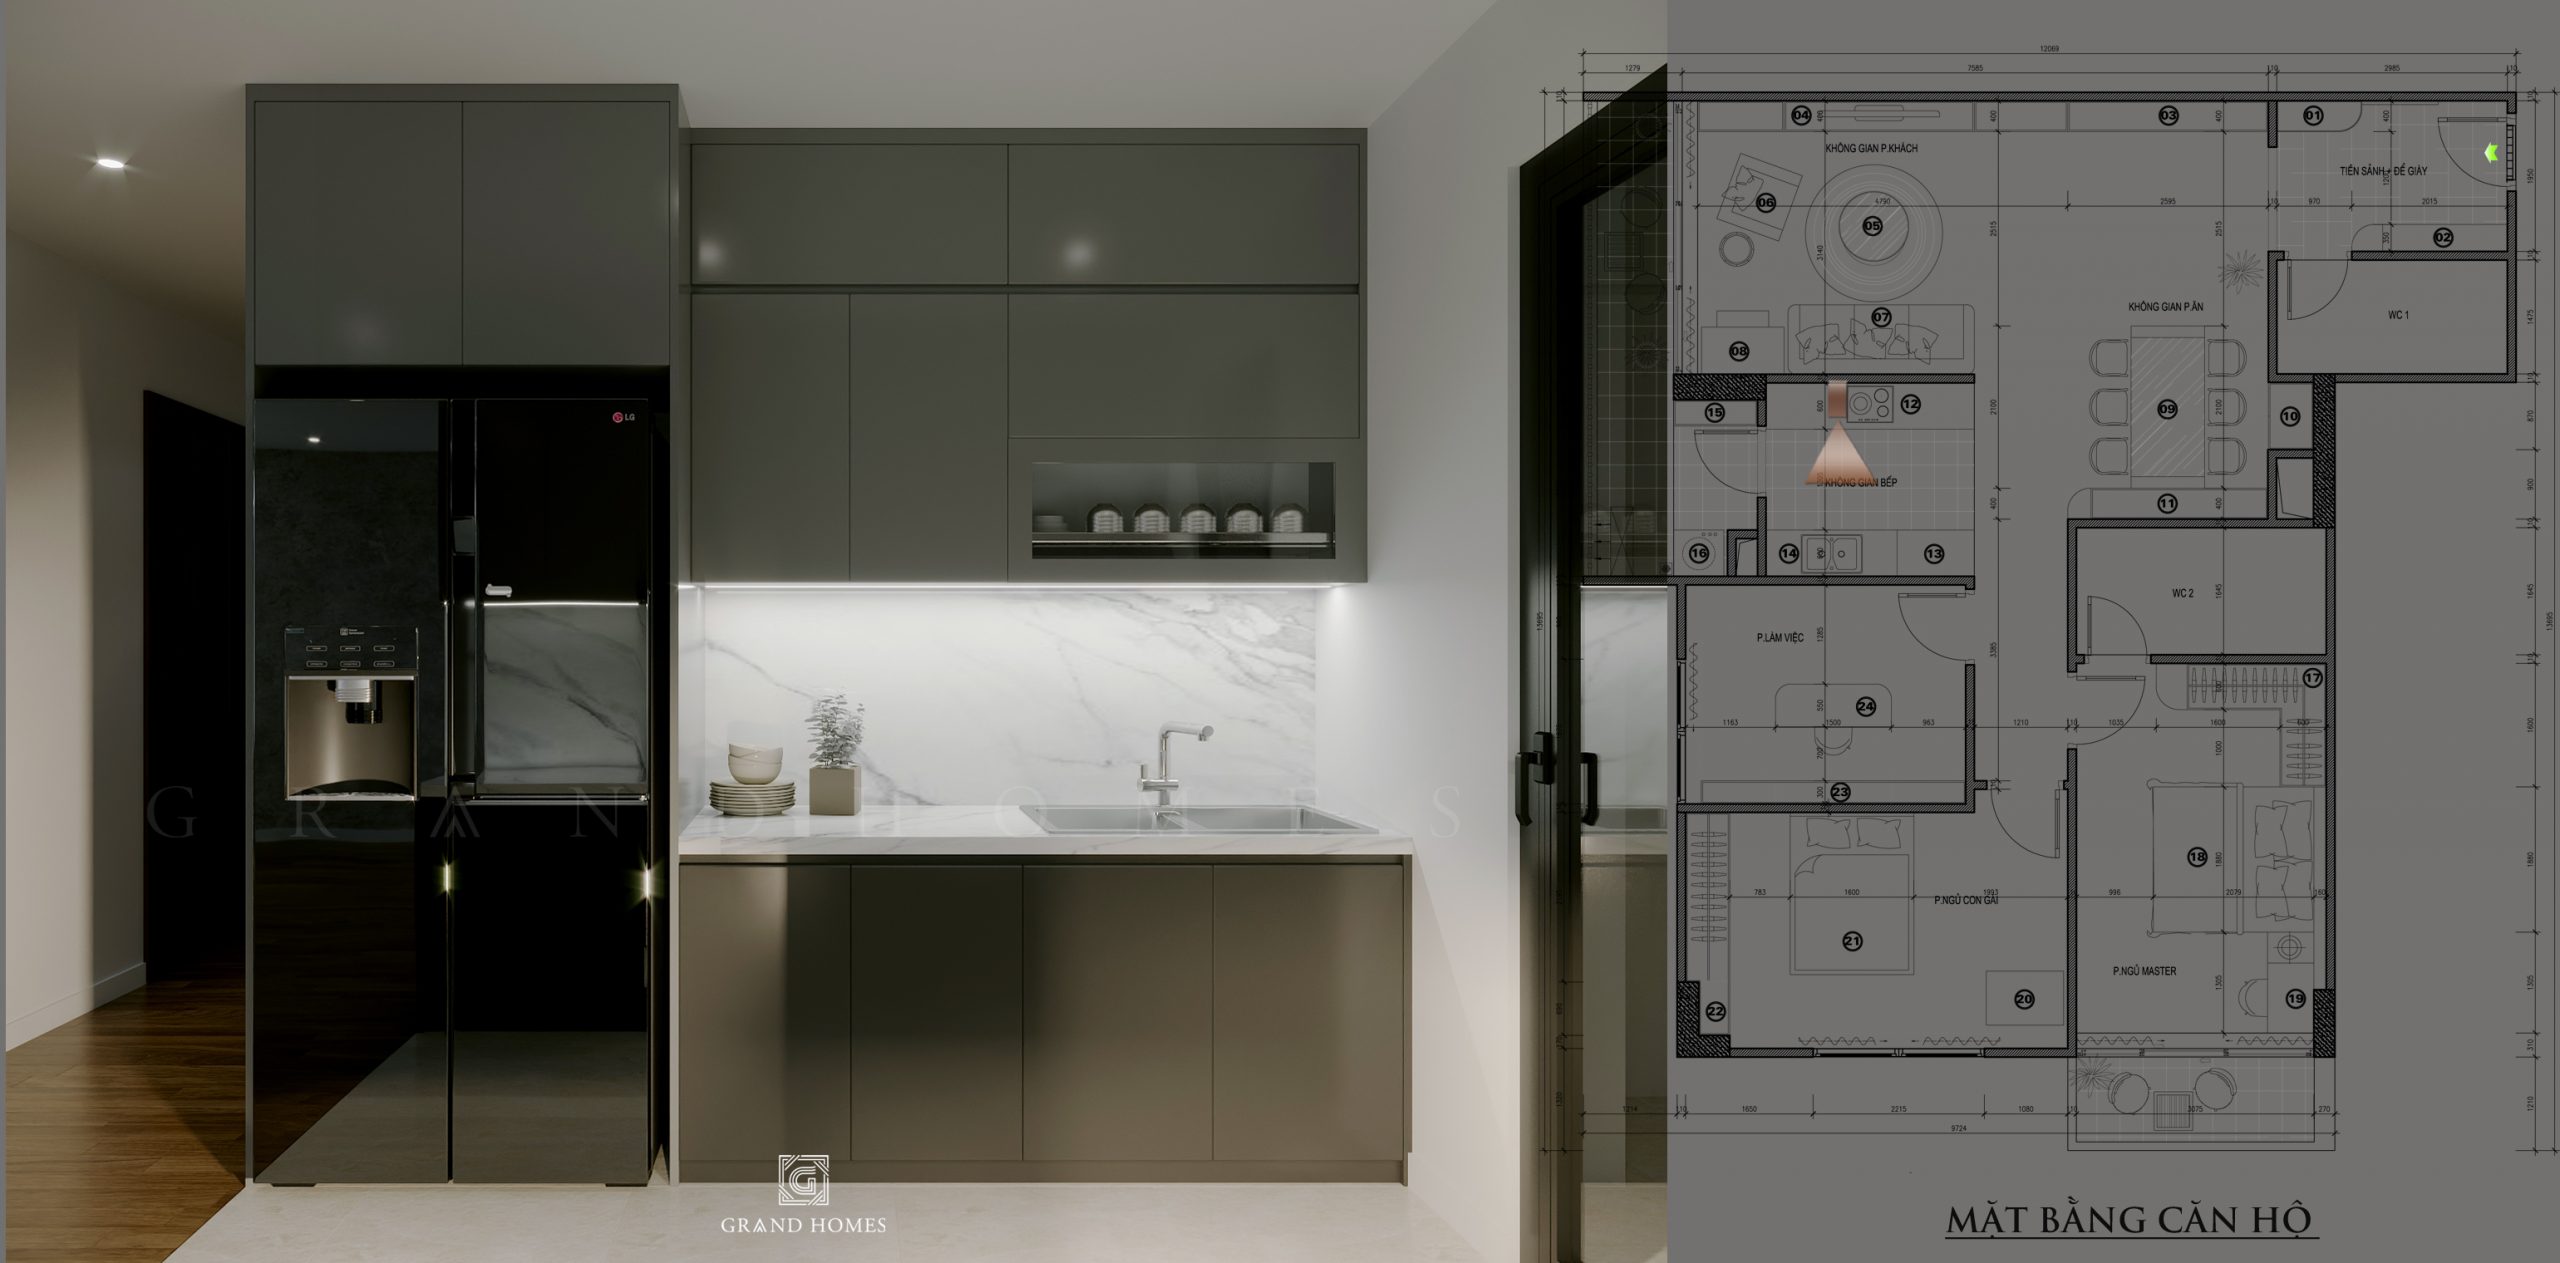 Phòng bếp chung cư không cần quá cầu kỳ trong thiết kế